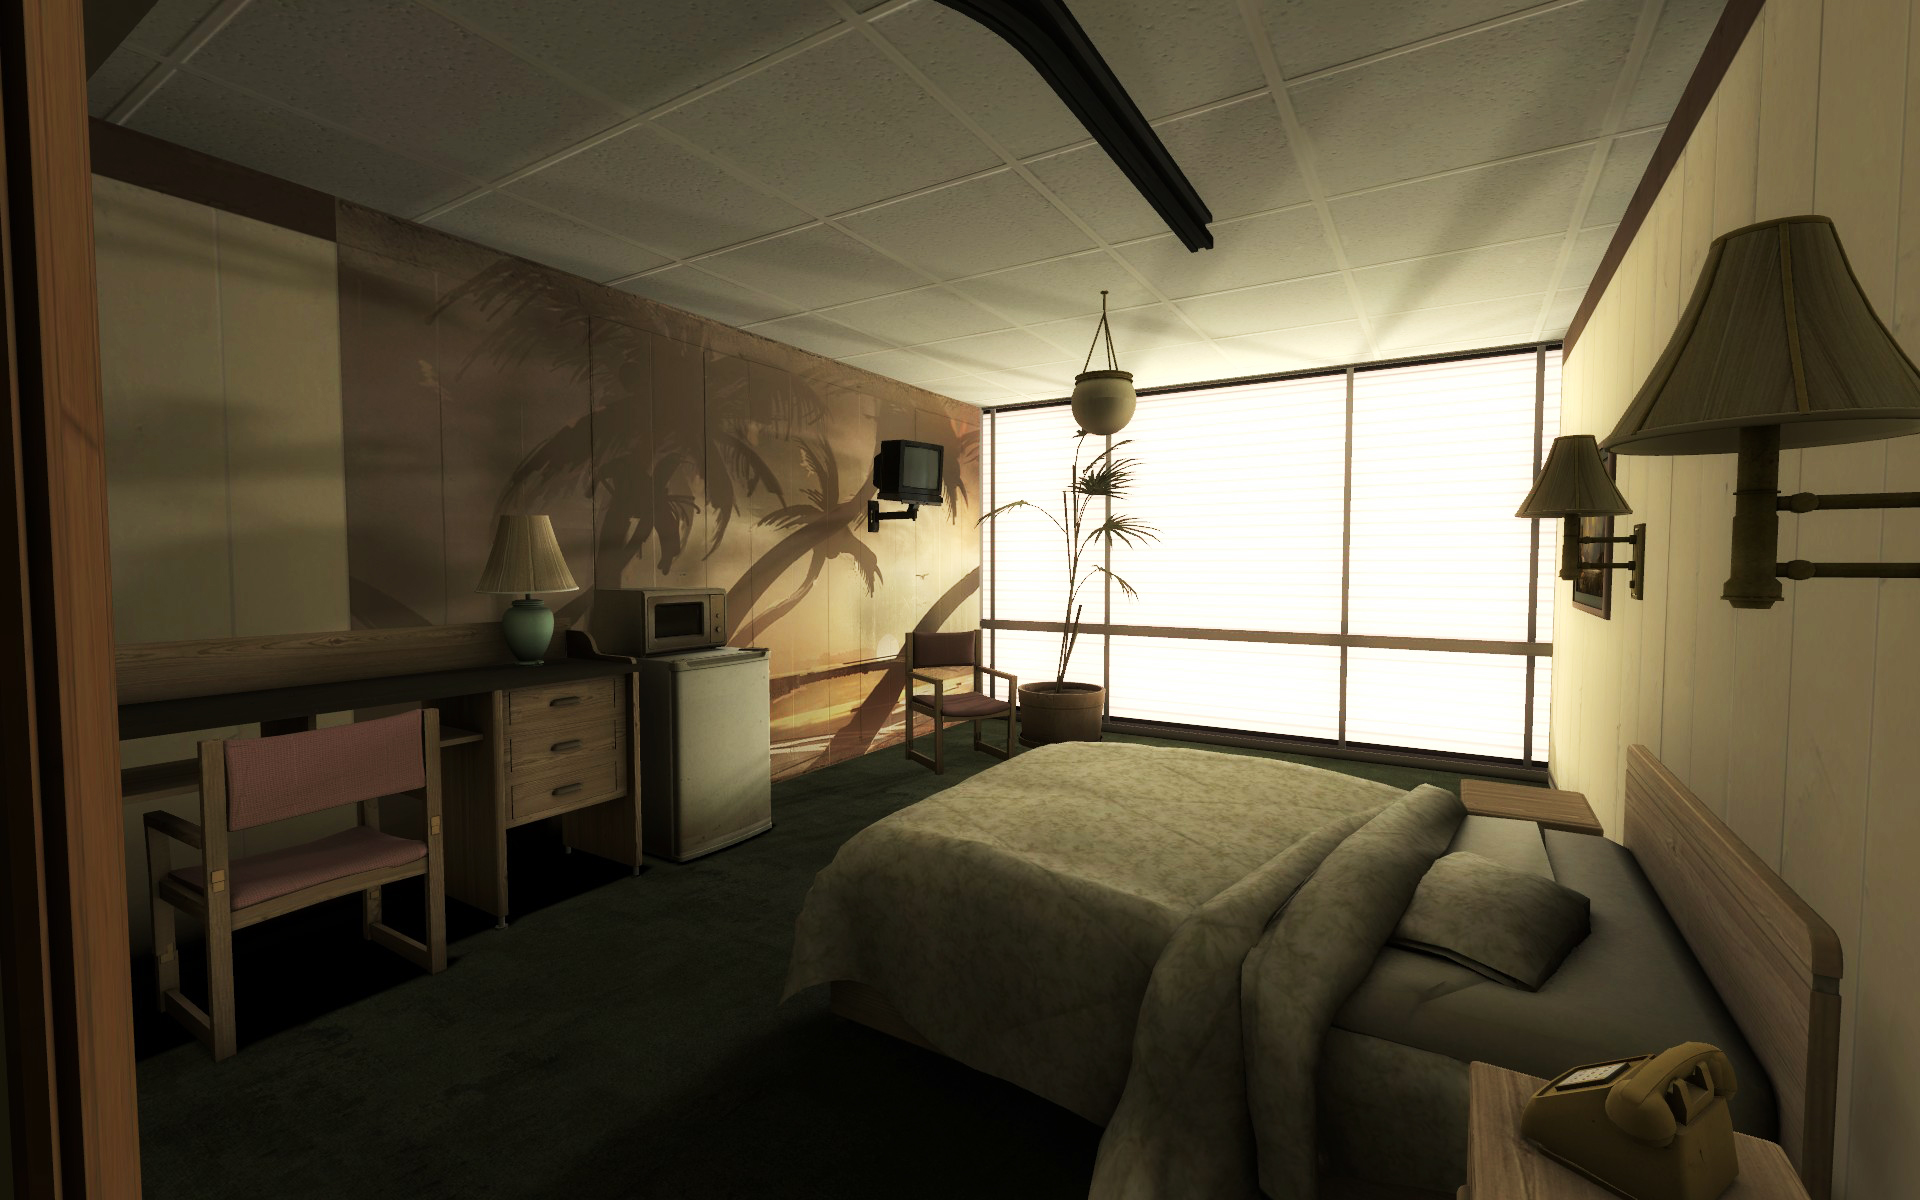 Соседная комната. Portal 2 комната. Комната халф лайф 2. Комната из игры. Комната для игр.